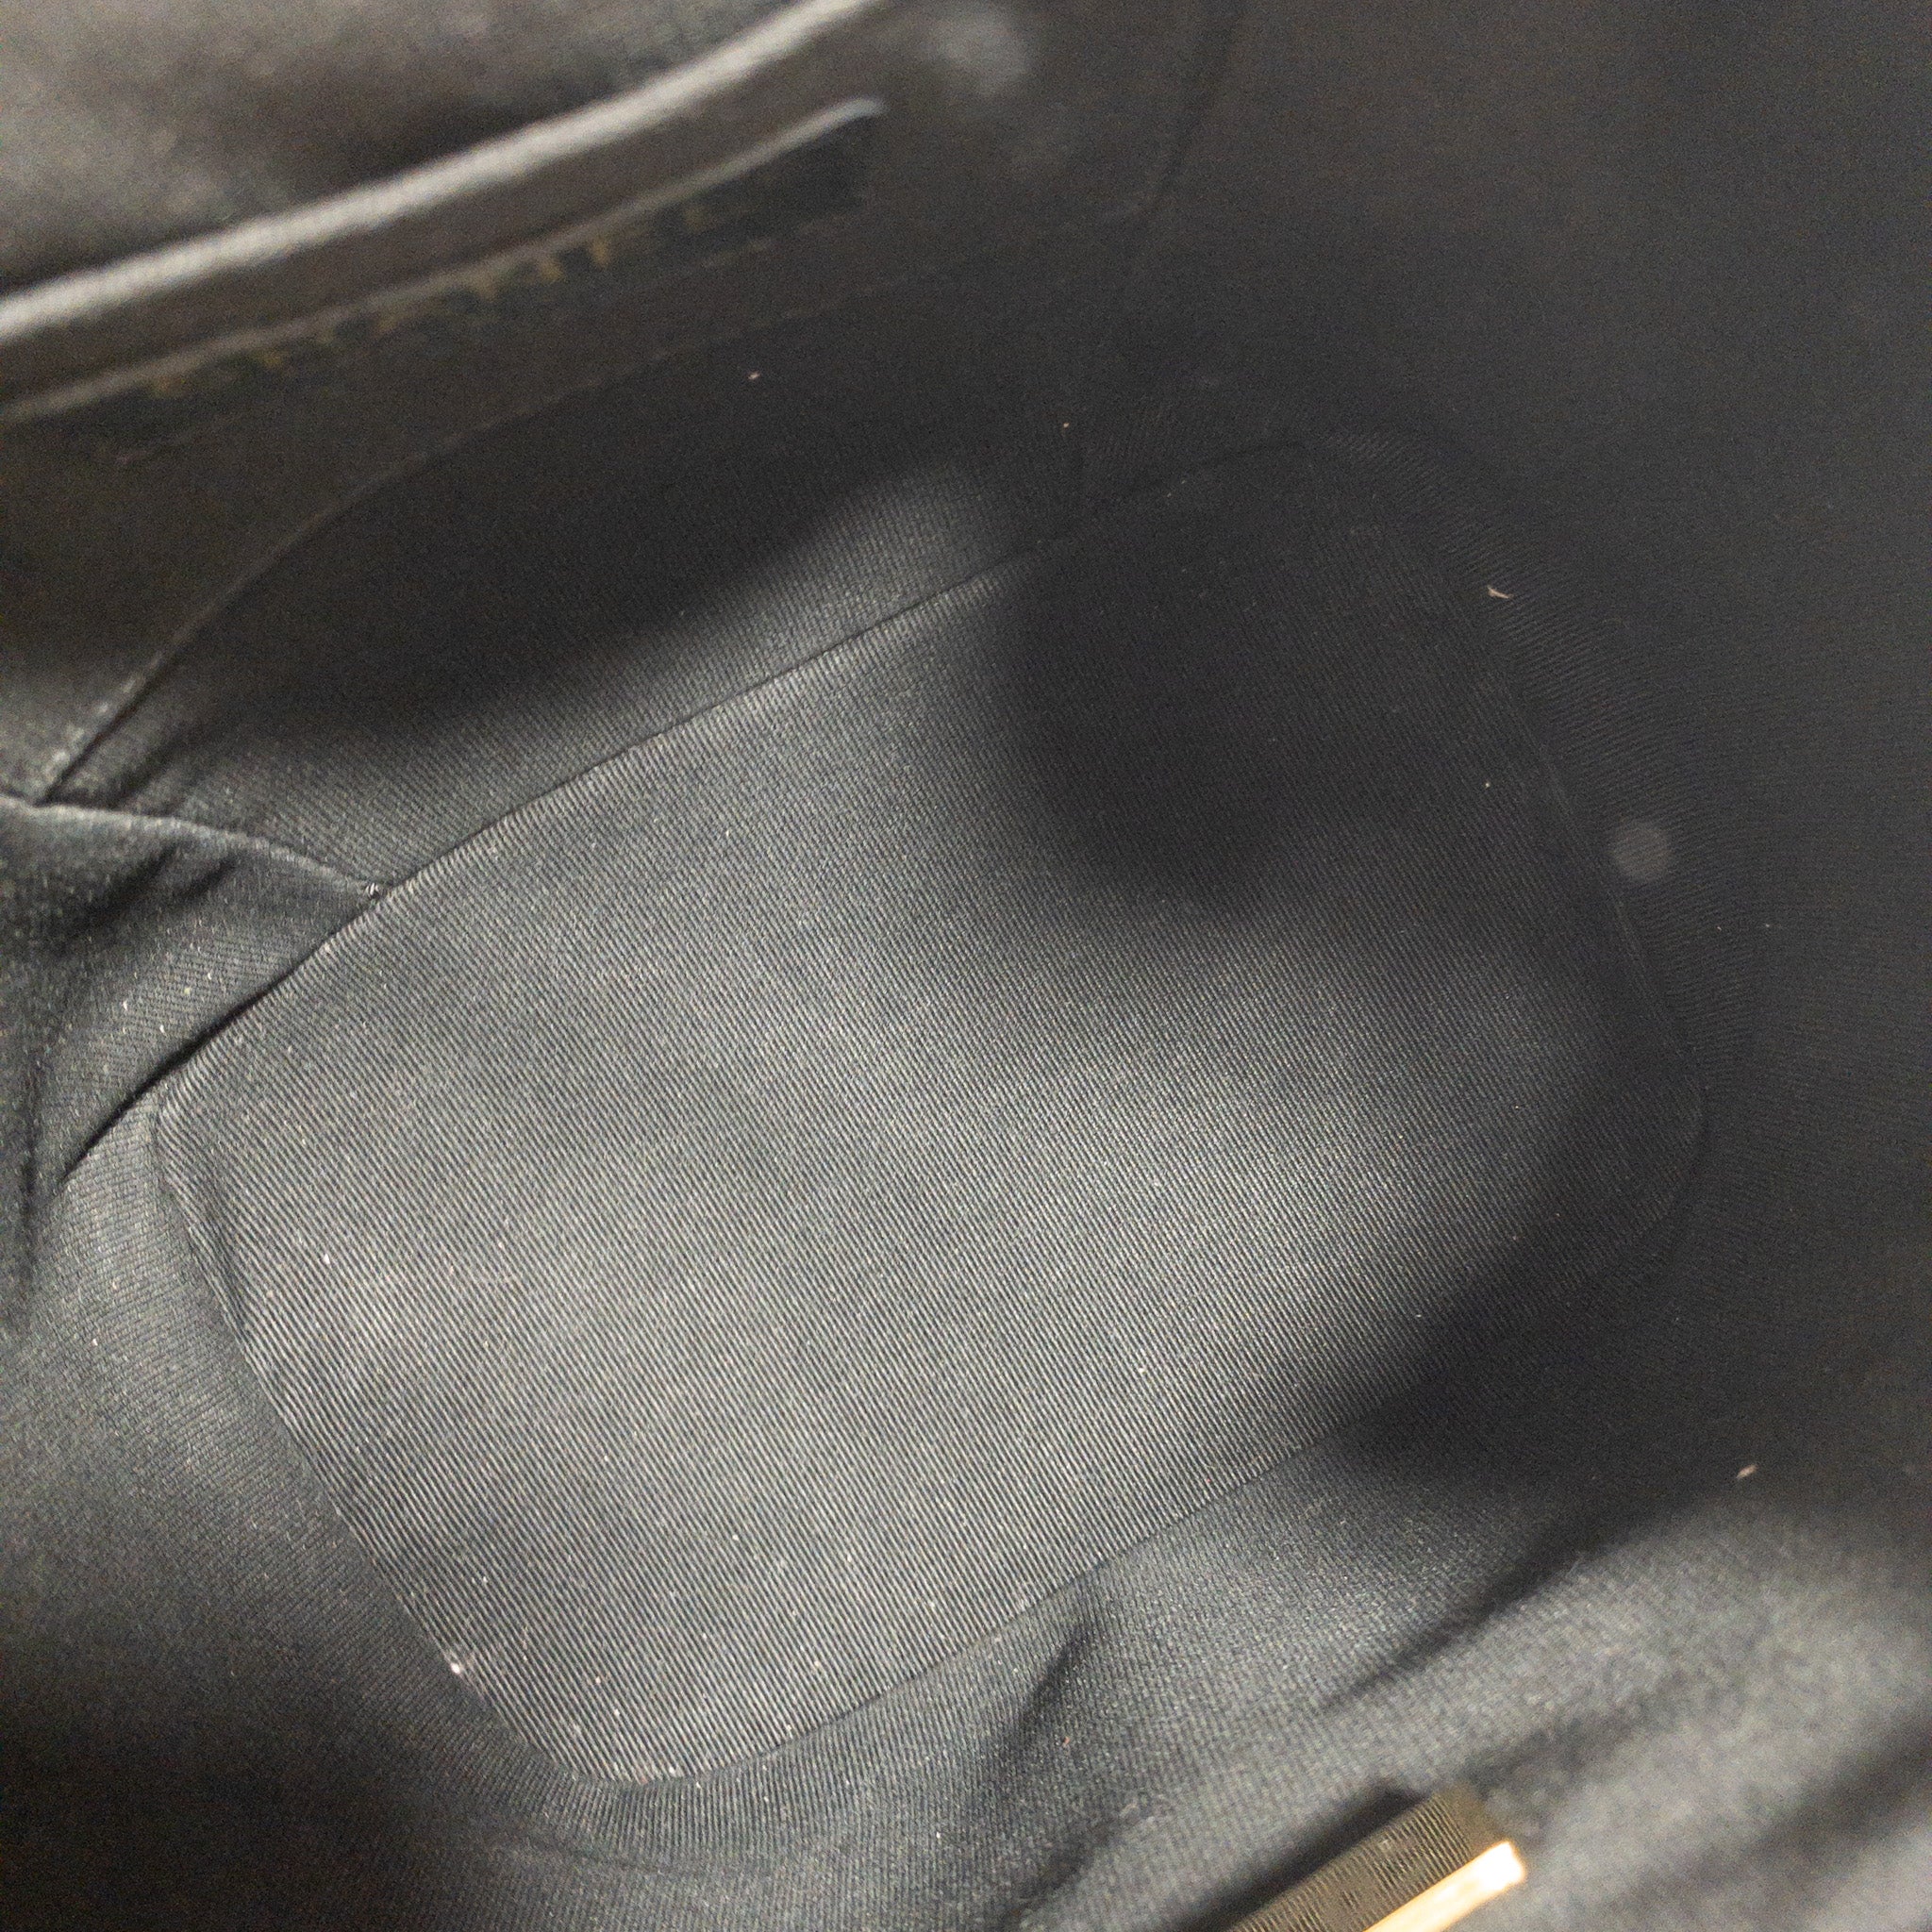 Duma leather backpack